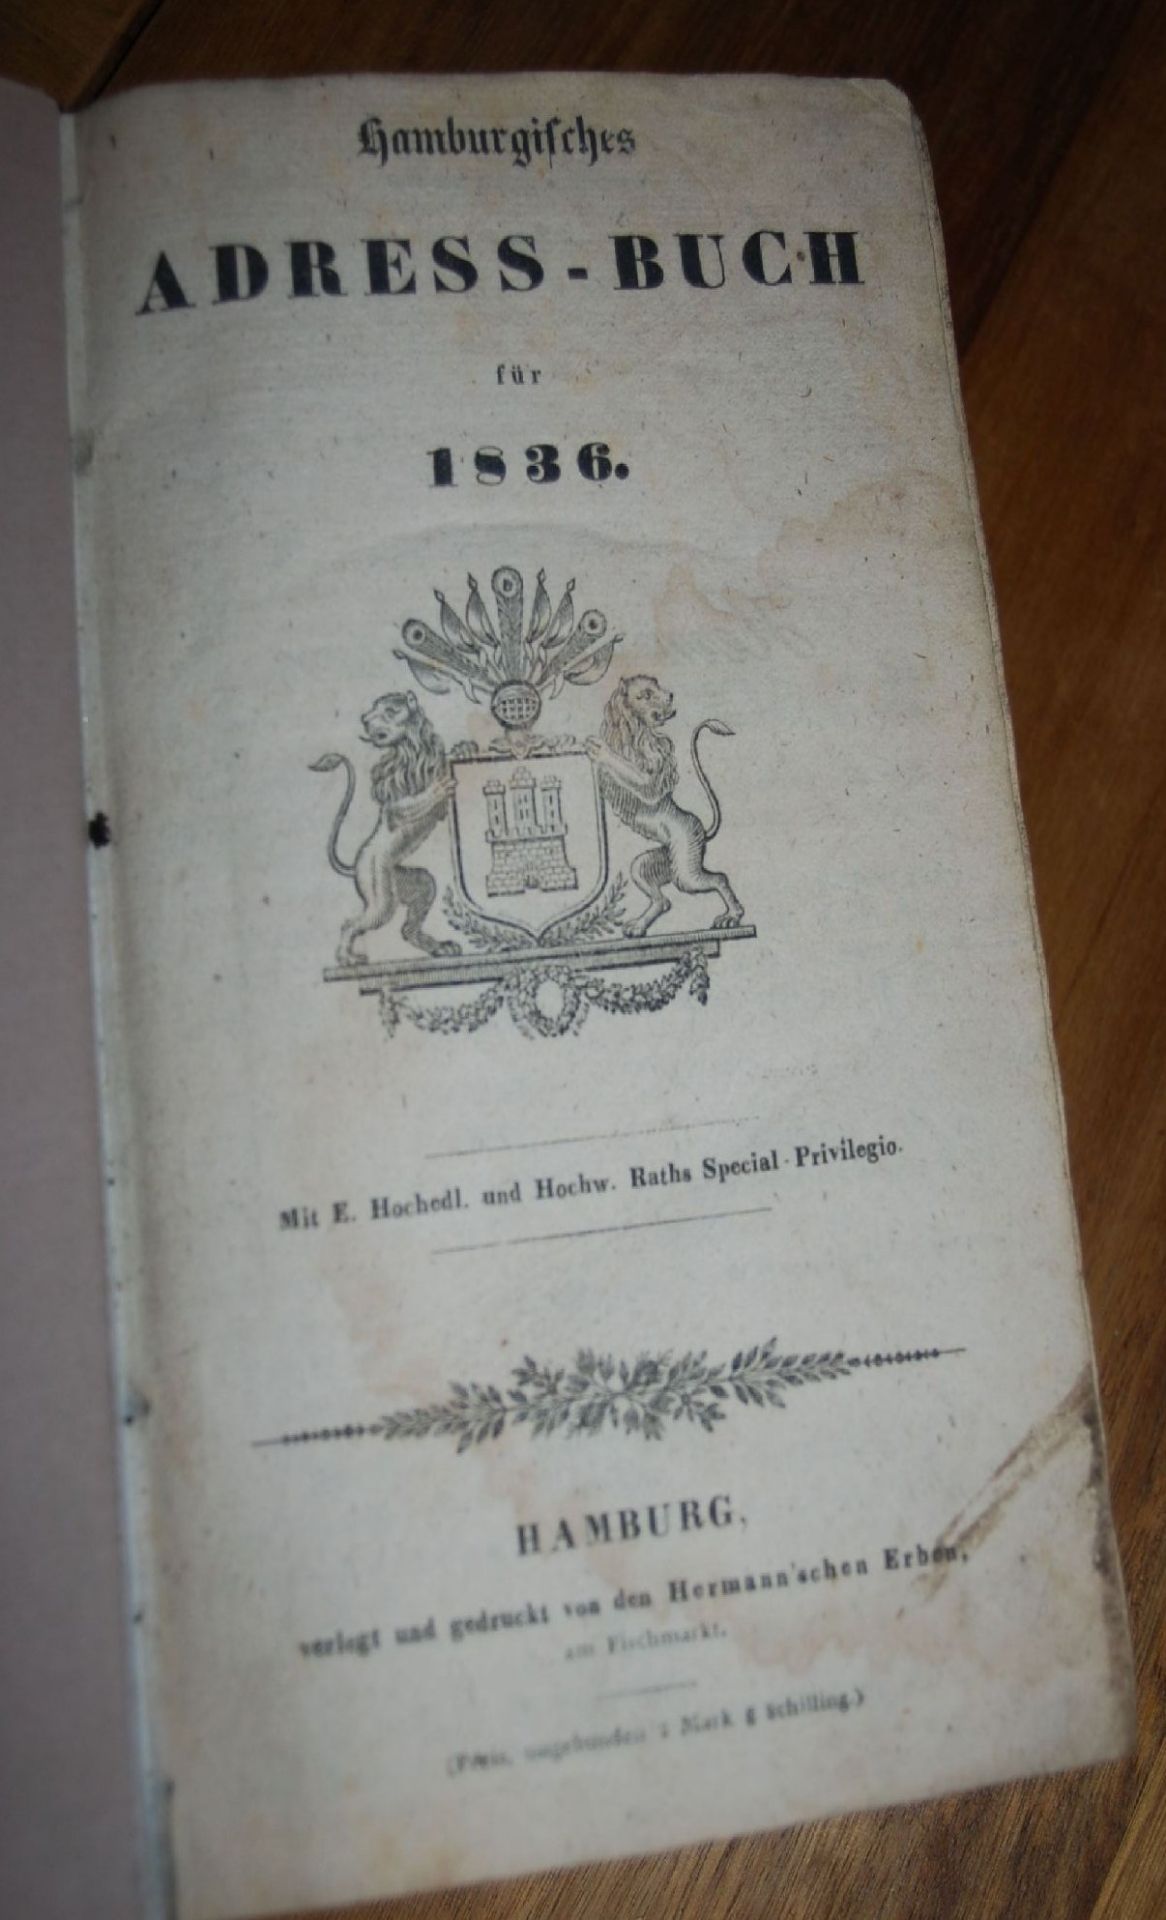 Hamburgisches Adress-Buch 1836, Bibliothekseinband, seitl. beschriftet, 20x13 cm, H-6,5 cm- - -22.61